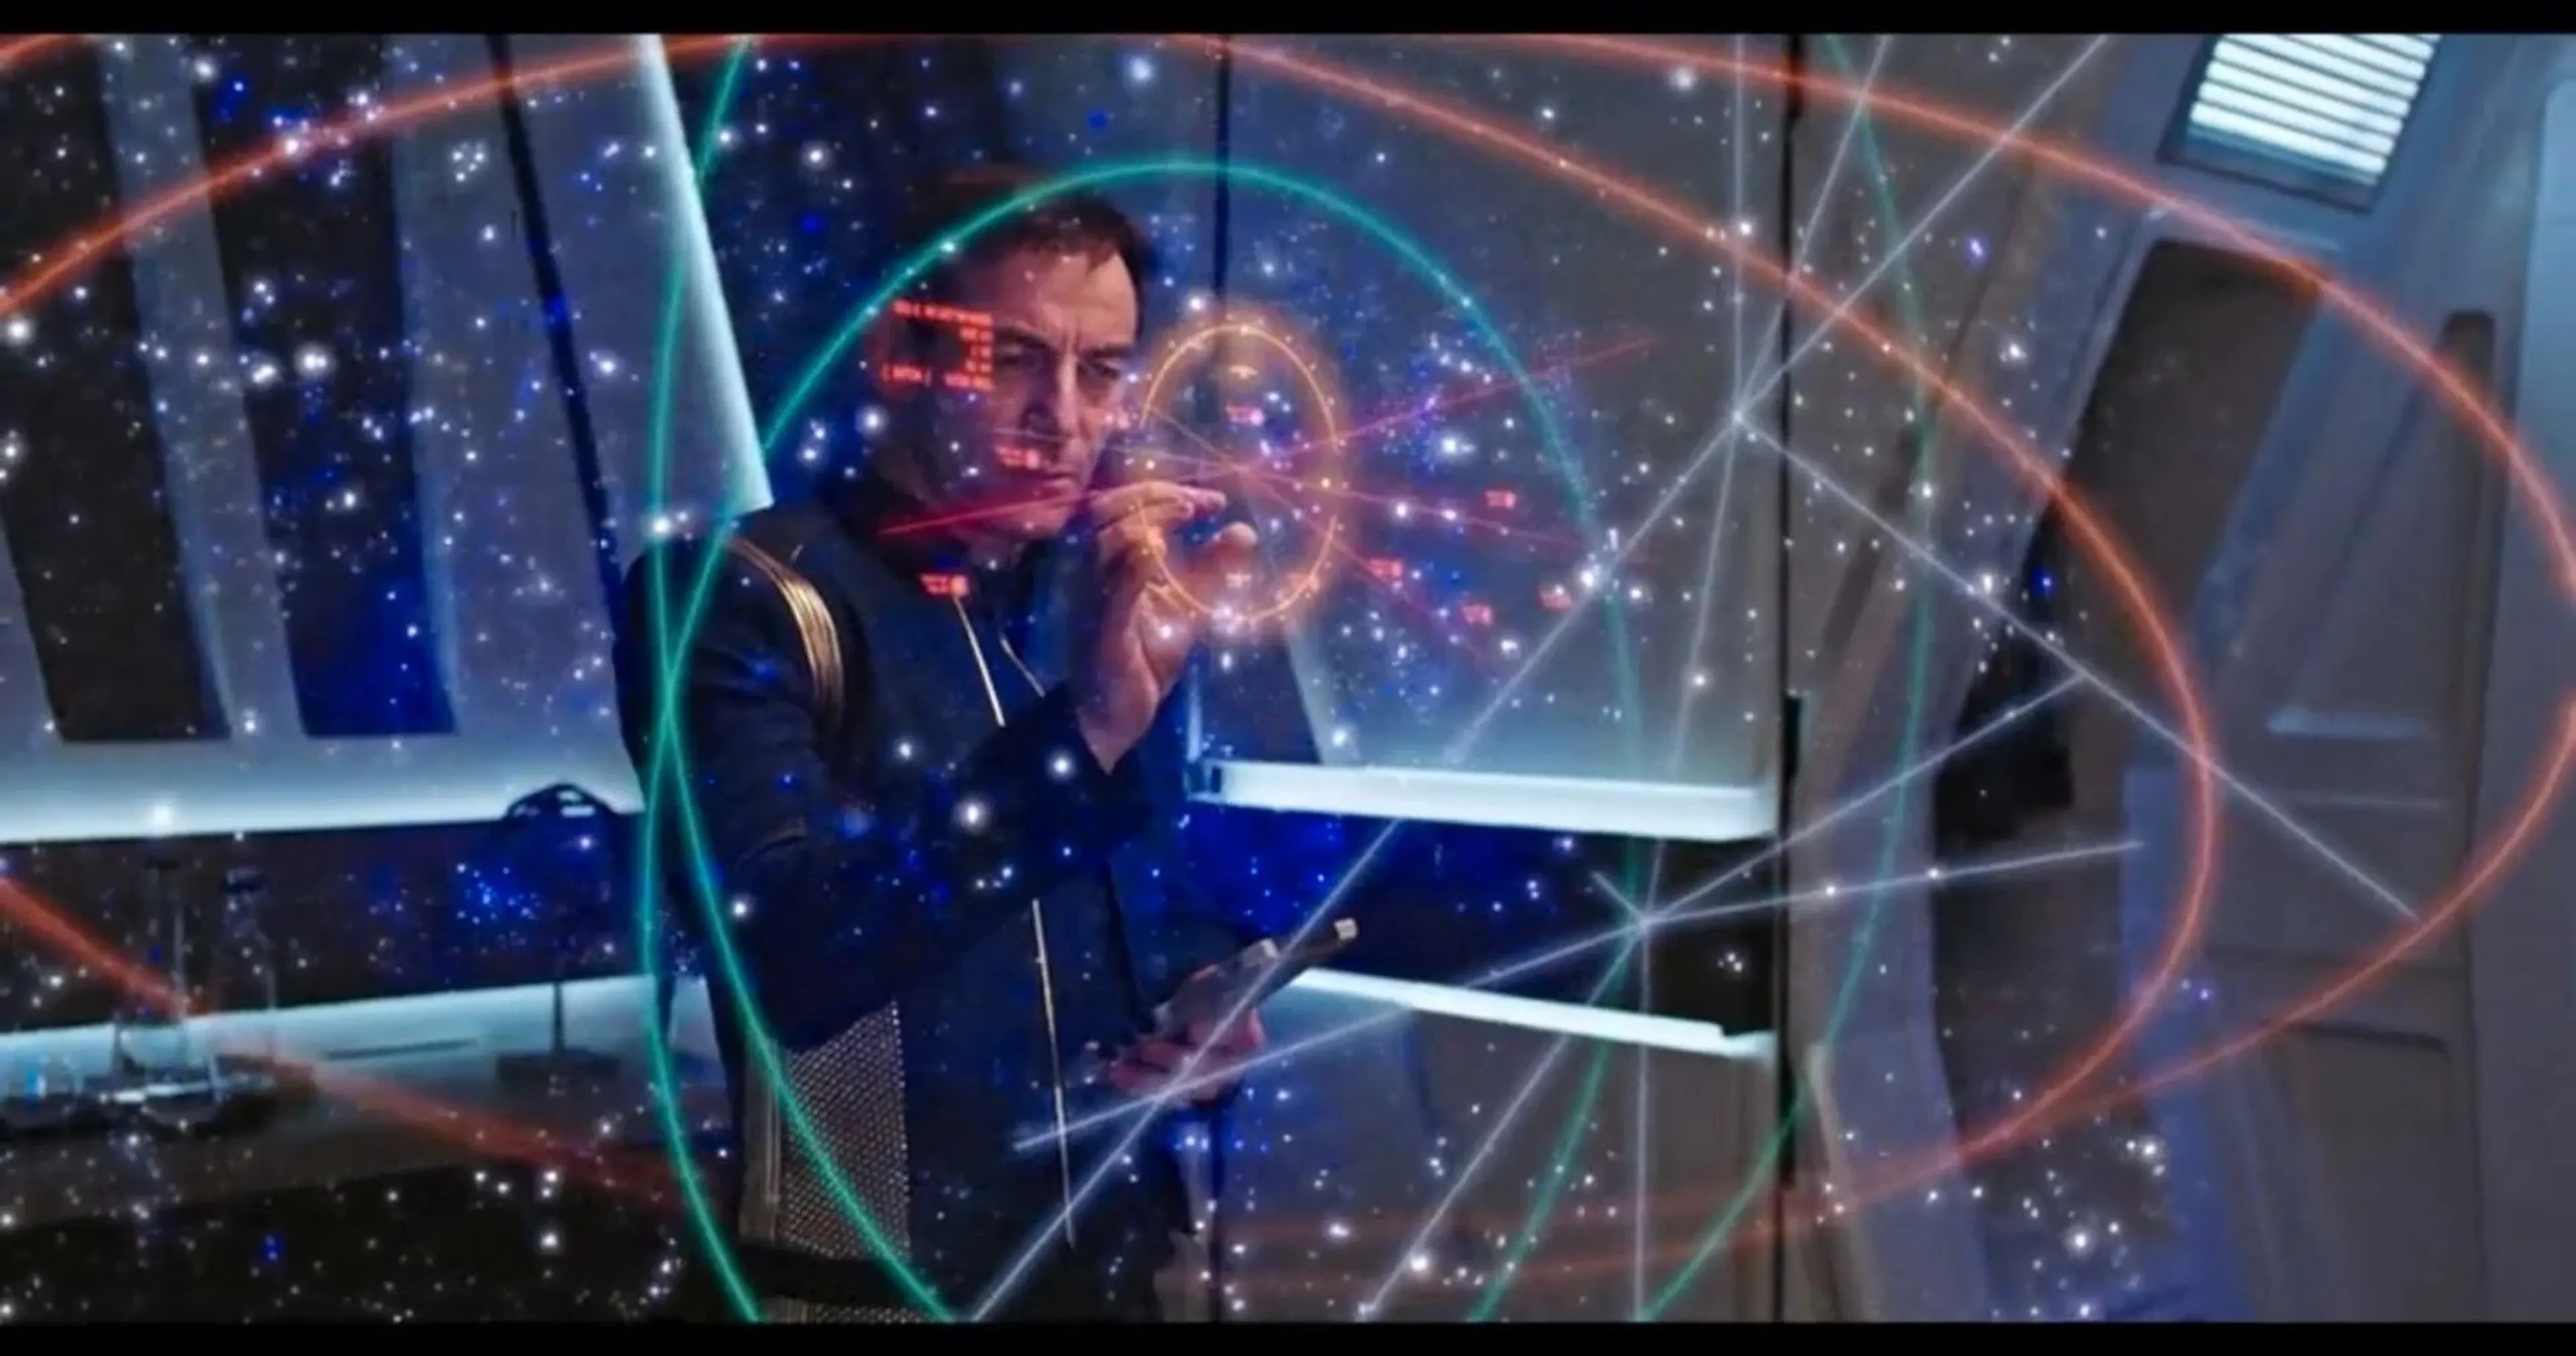 Los personajes de series como 'Star Trek' usan hologramas avanzados para explorar el mundo desconocido. Puede que en unos años puedas hacer algo similar.